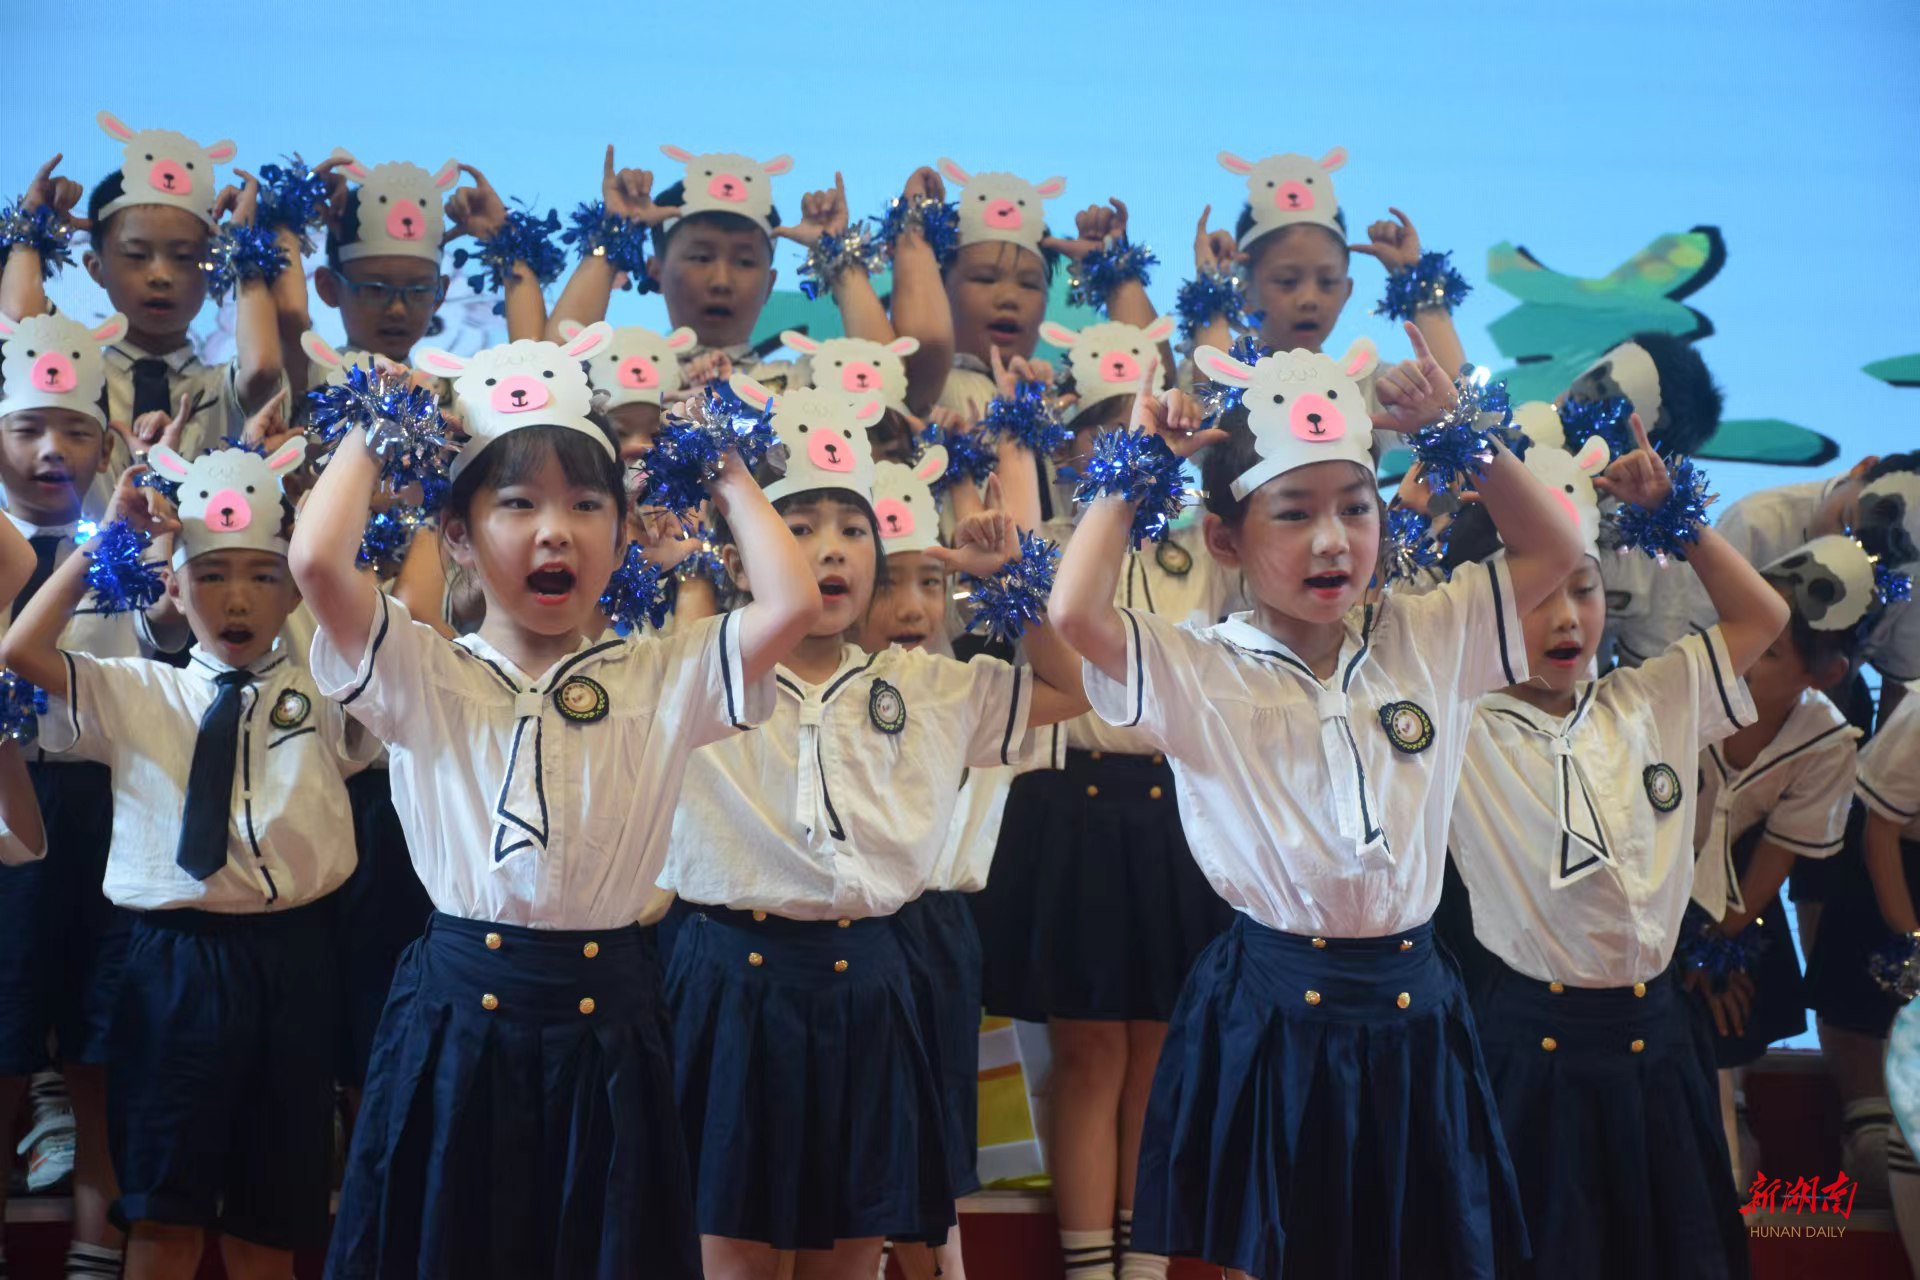 马王堆小学:学生变身小小歌唱家,最美歌声献给党